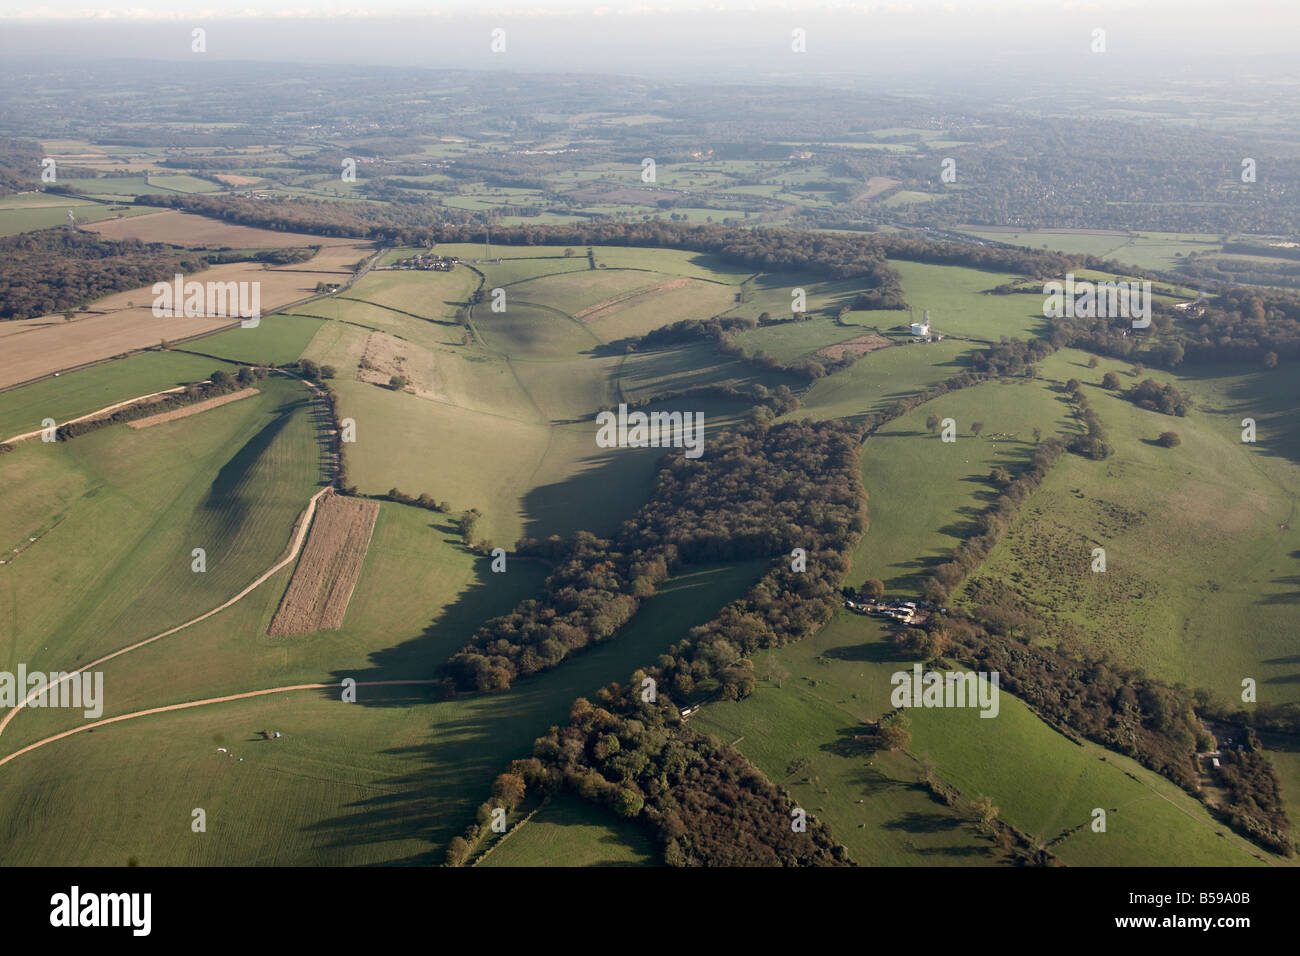 Vue aérienne au sud-est du pays, les arbres des champs Westerham Oxted Tandridge Londres TN16 RH9 England UK Banque D'Images